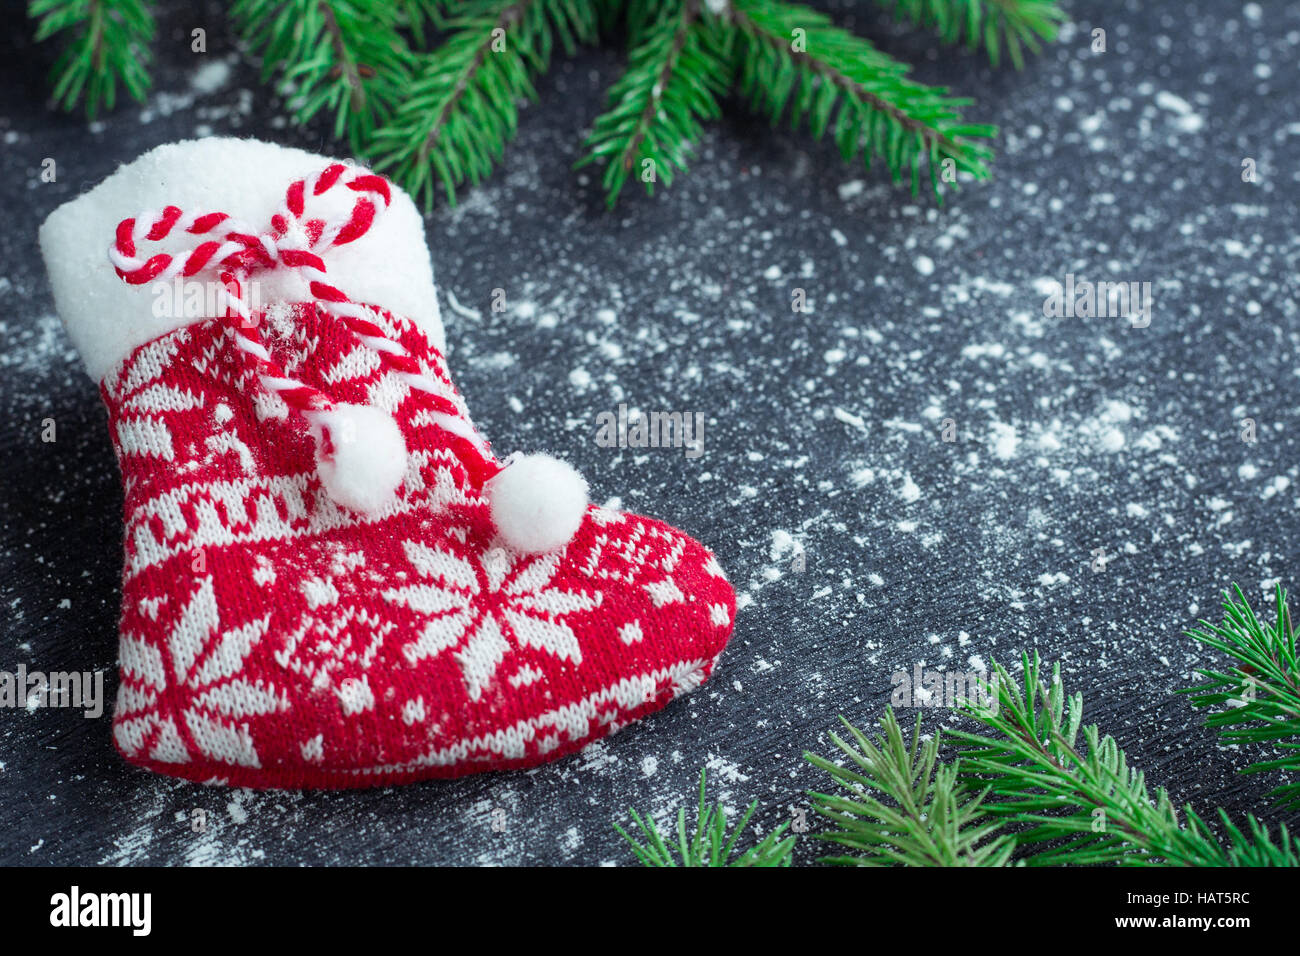 Weihnachten und Neujahr Winter Urlaub snowbound Zusammensetzung der roten Strumpf auf schwarzen Raum Hintergrund mit grünen Tannenzweigen Baum Stockfoto